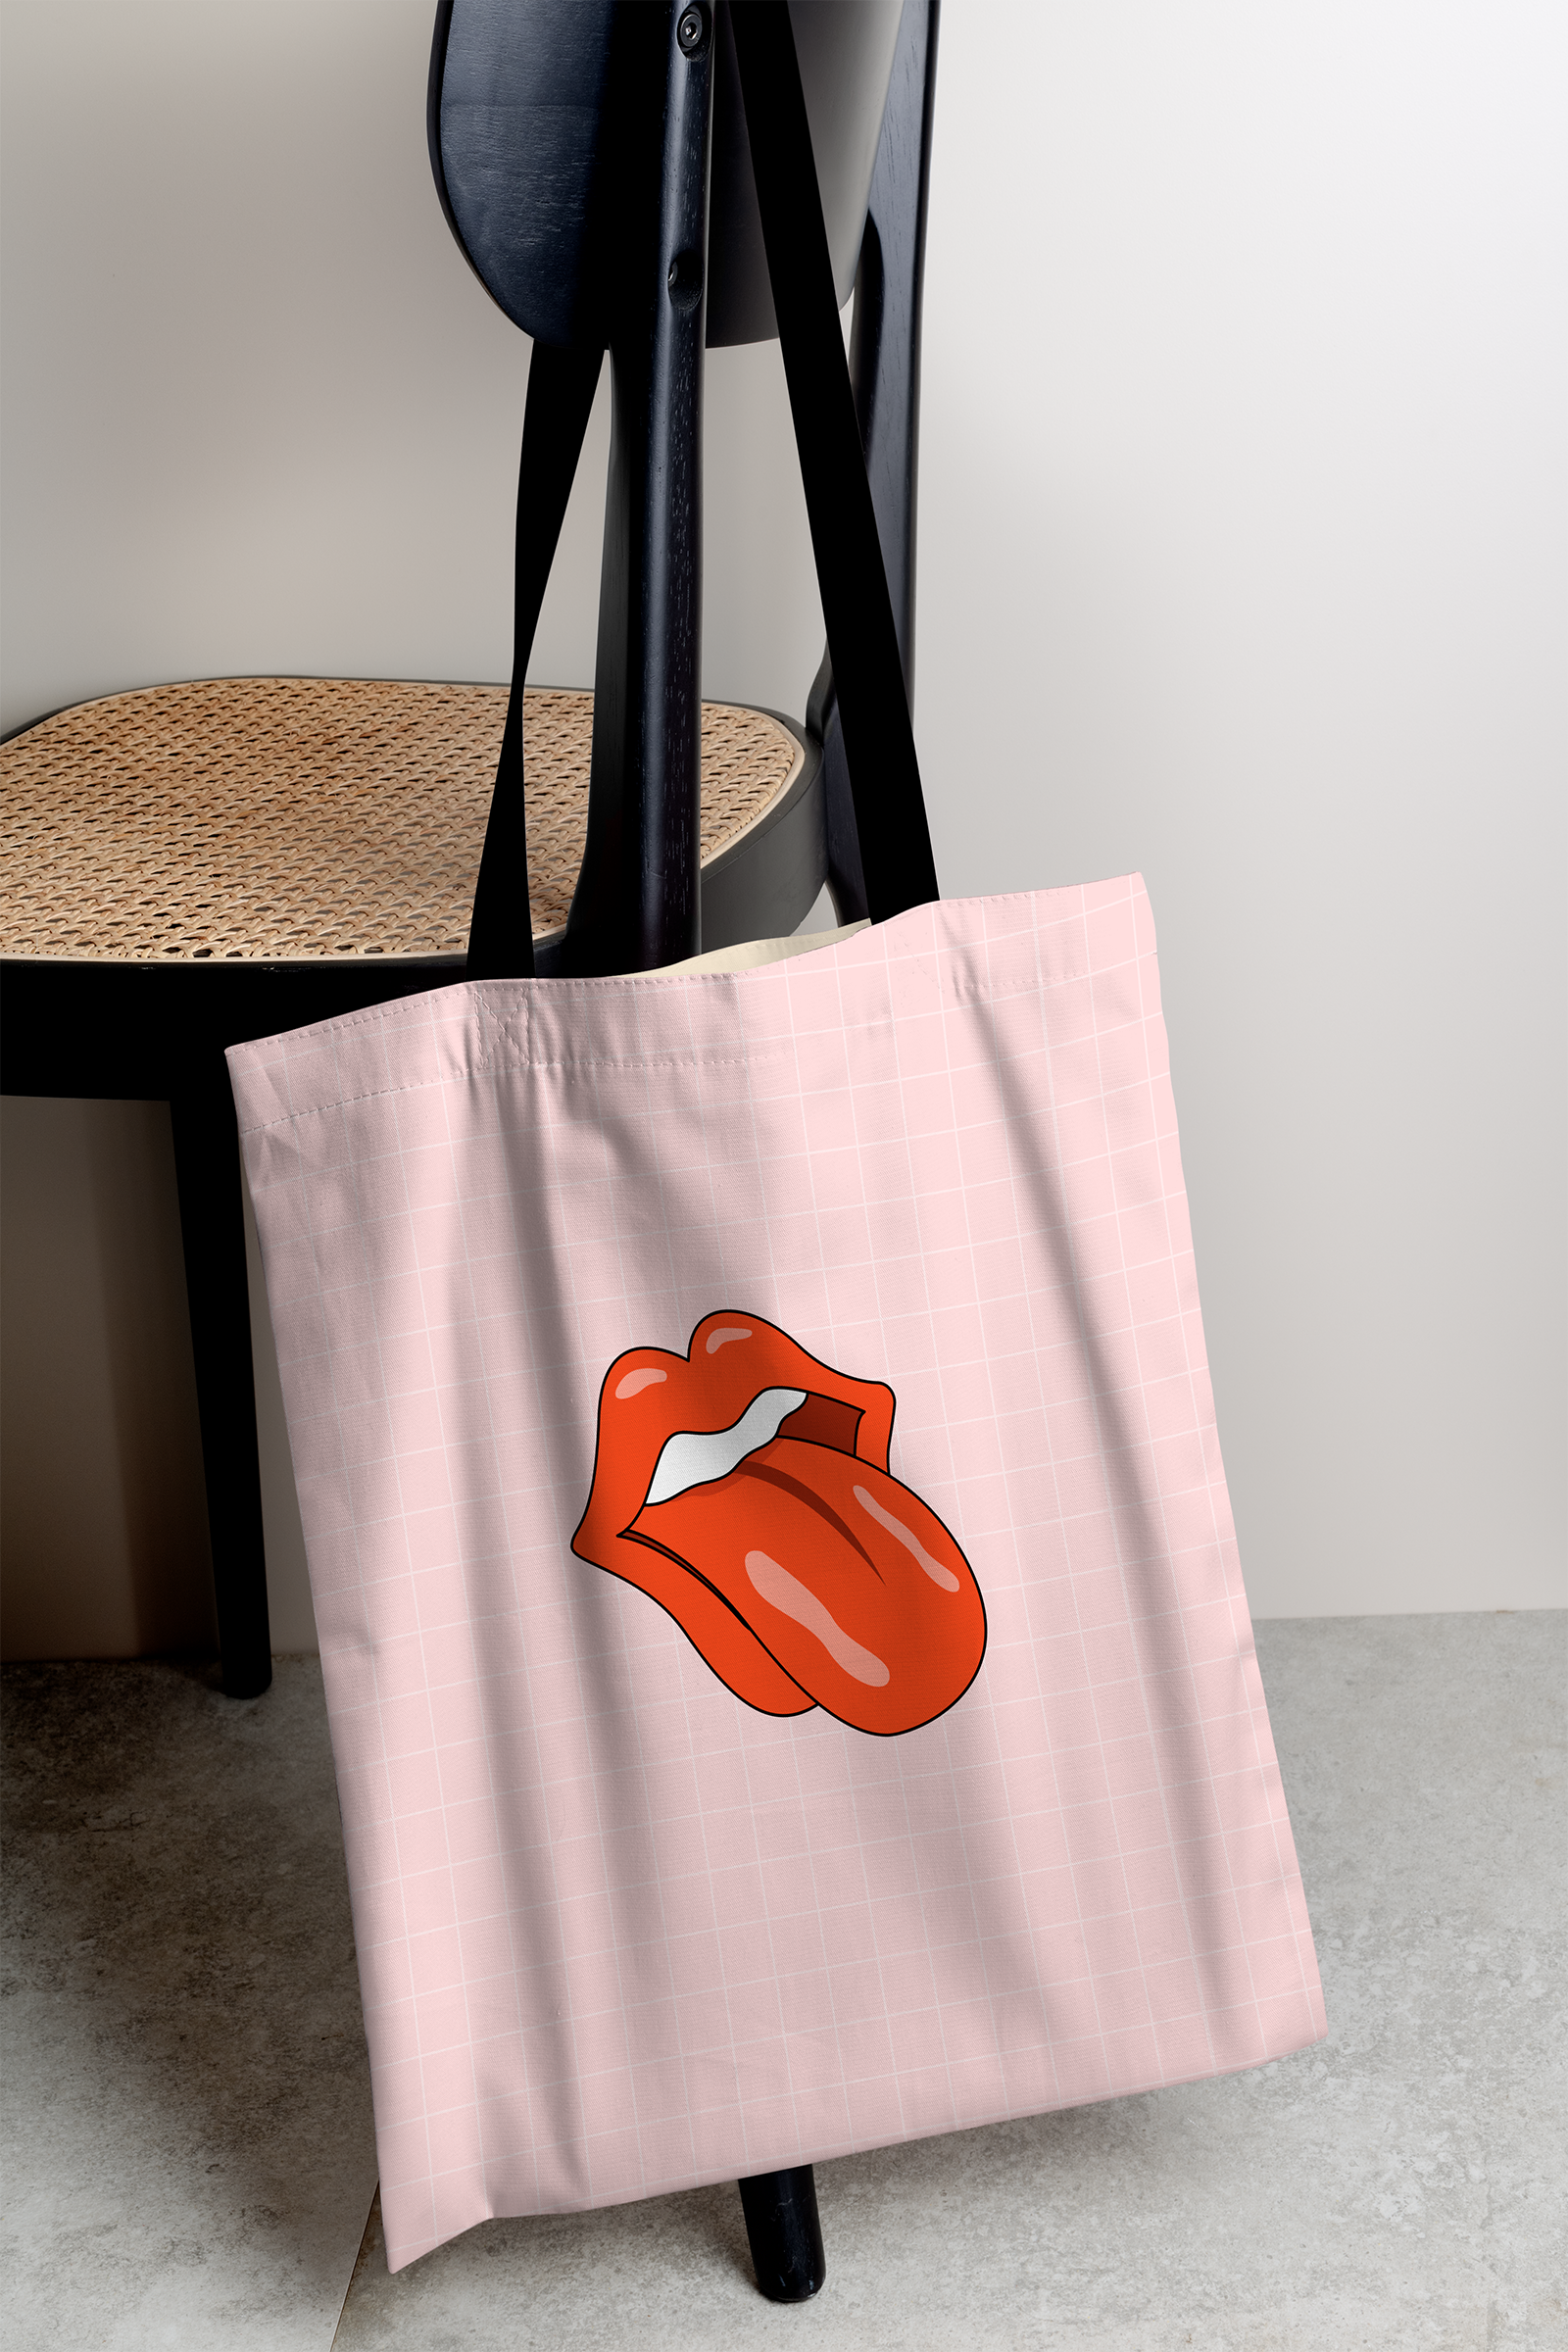 Tongue Tote Bag